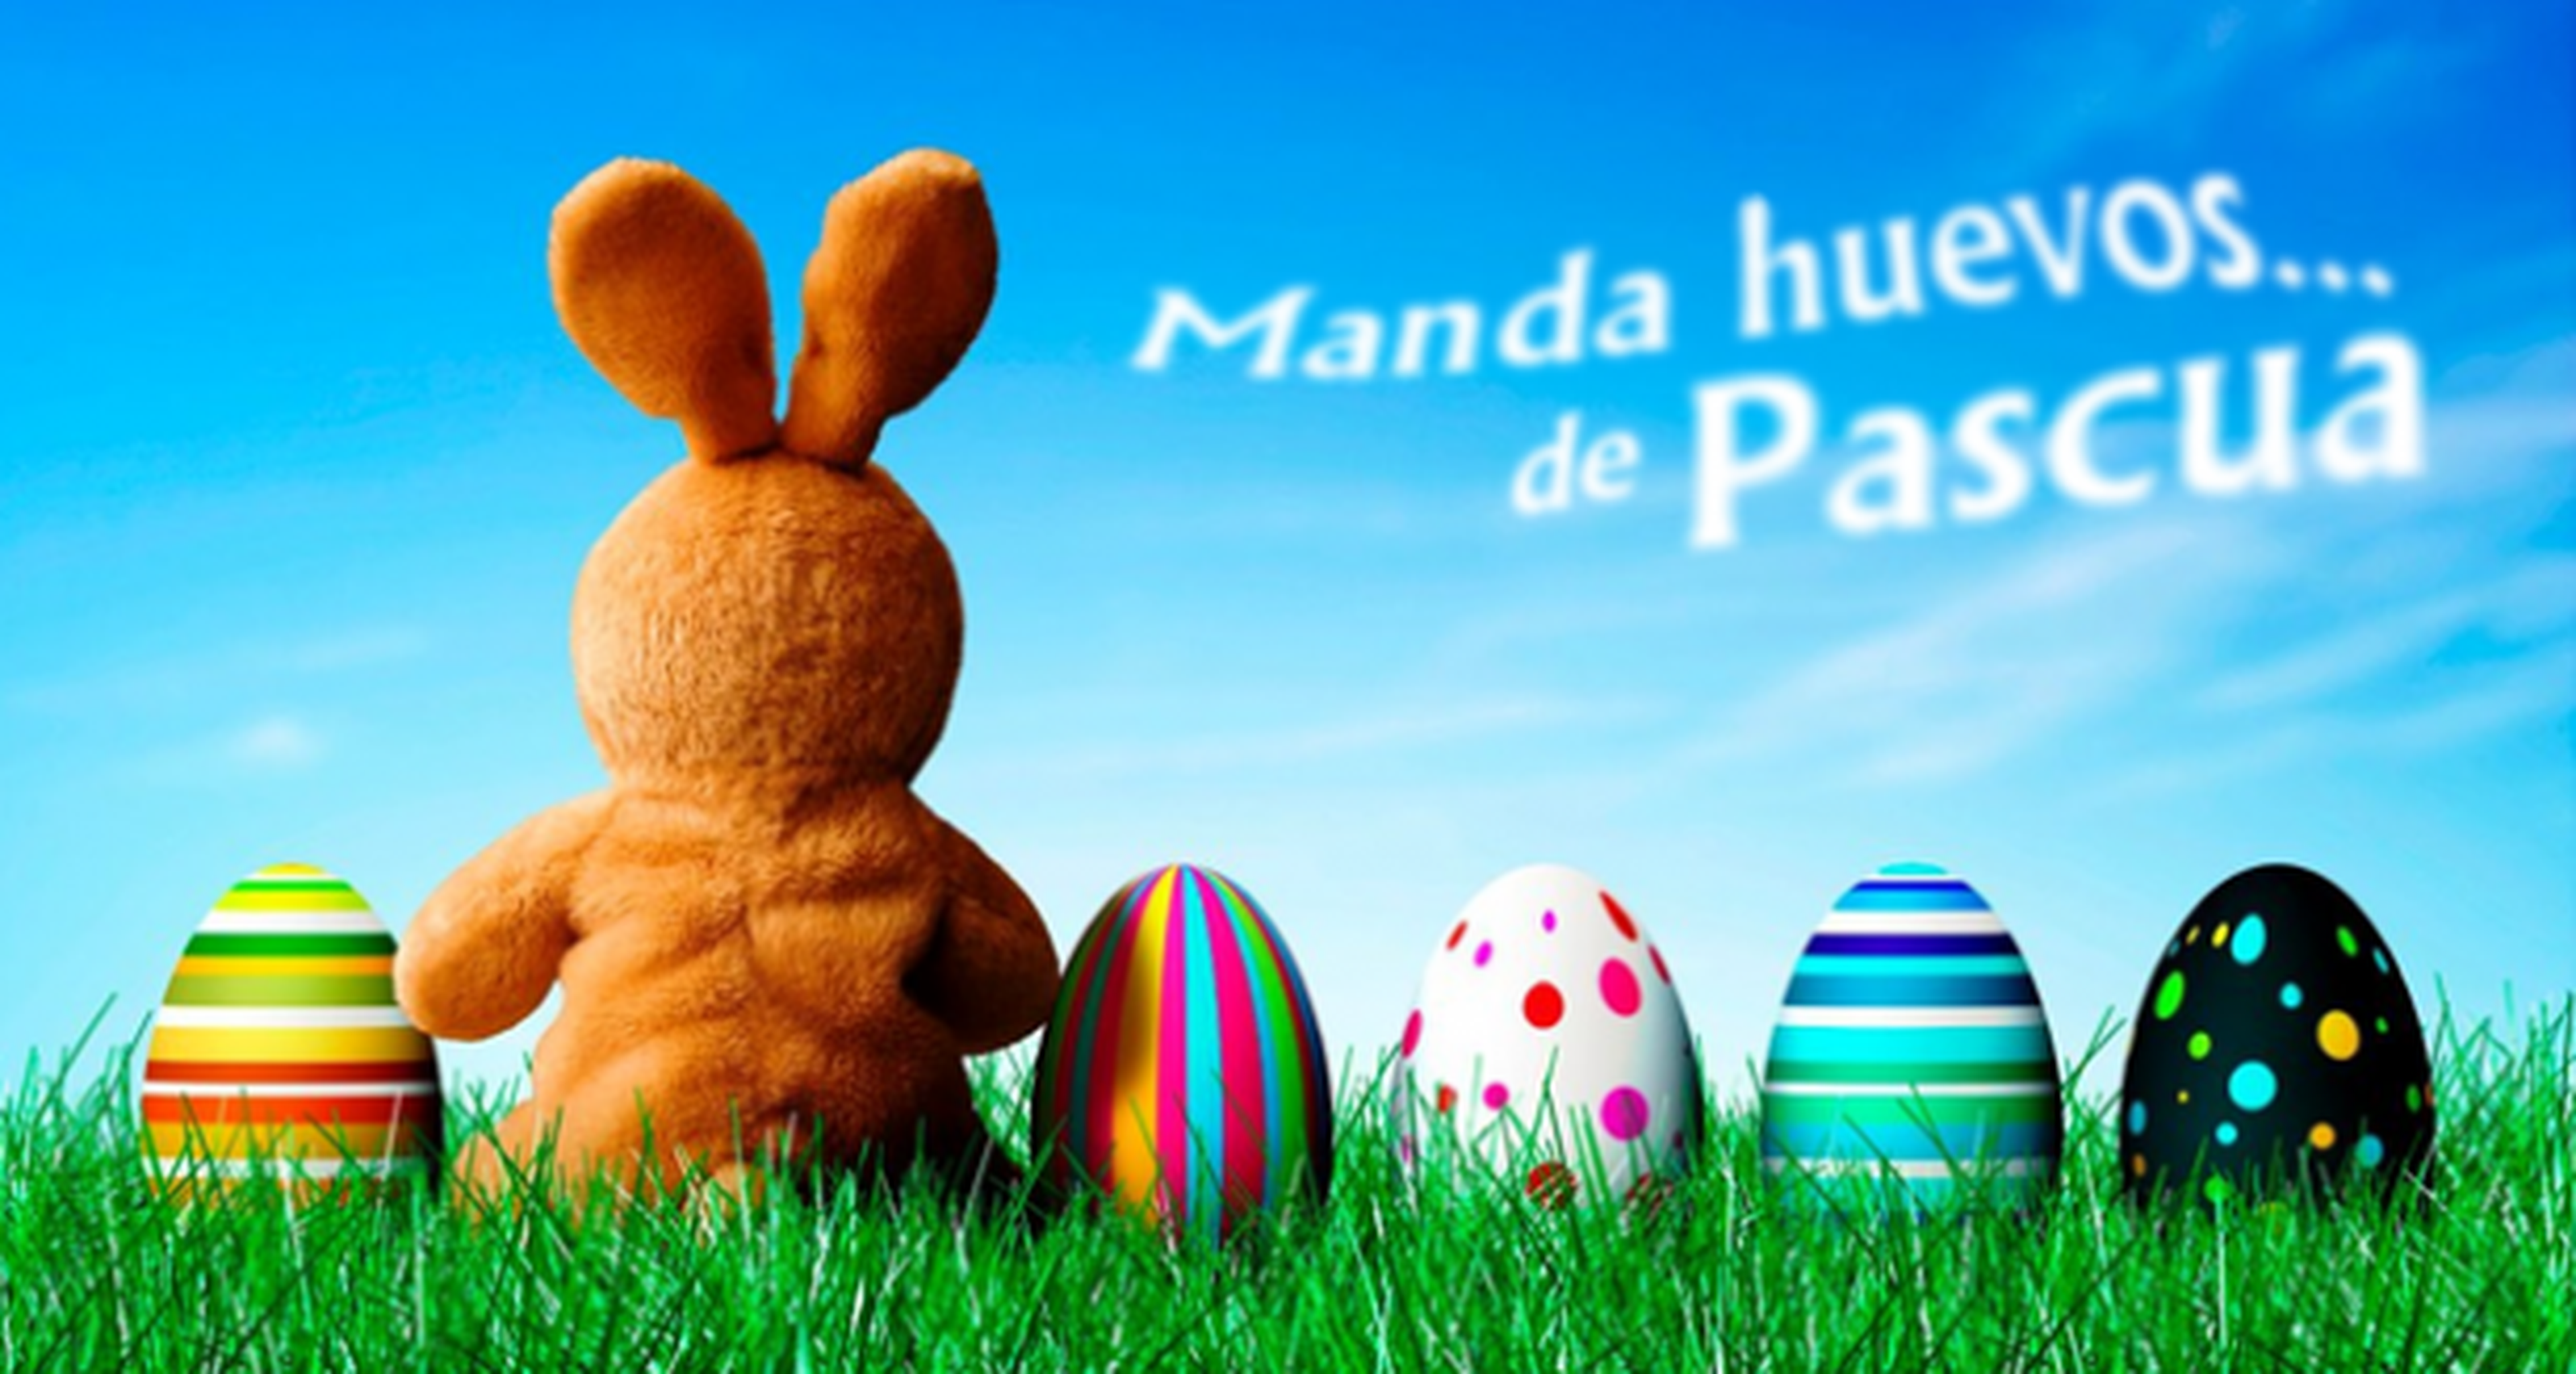 Club Chistendo: Manda huevos... ¡de Pascua!